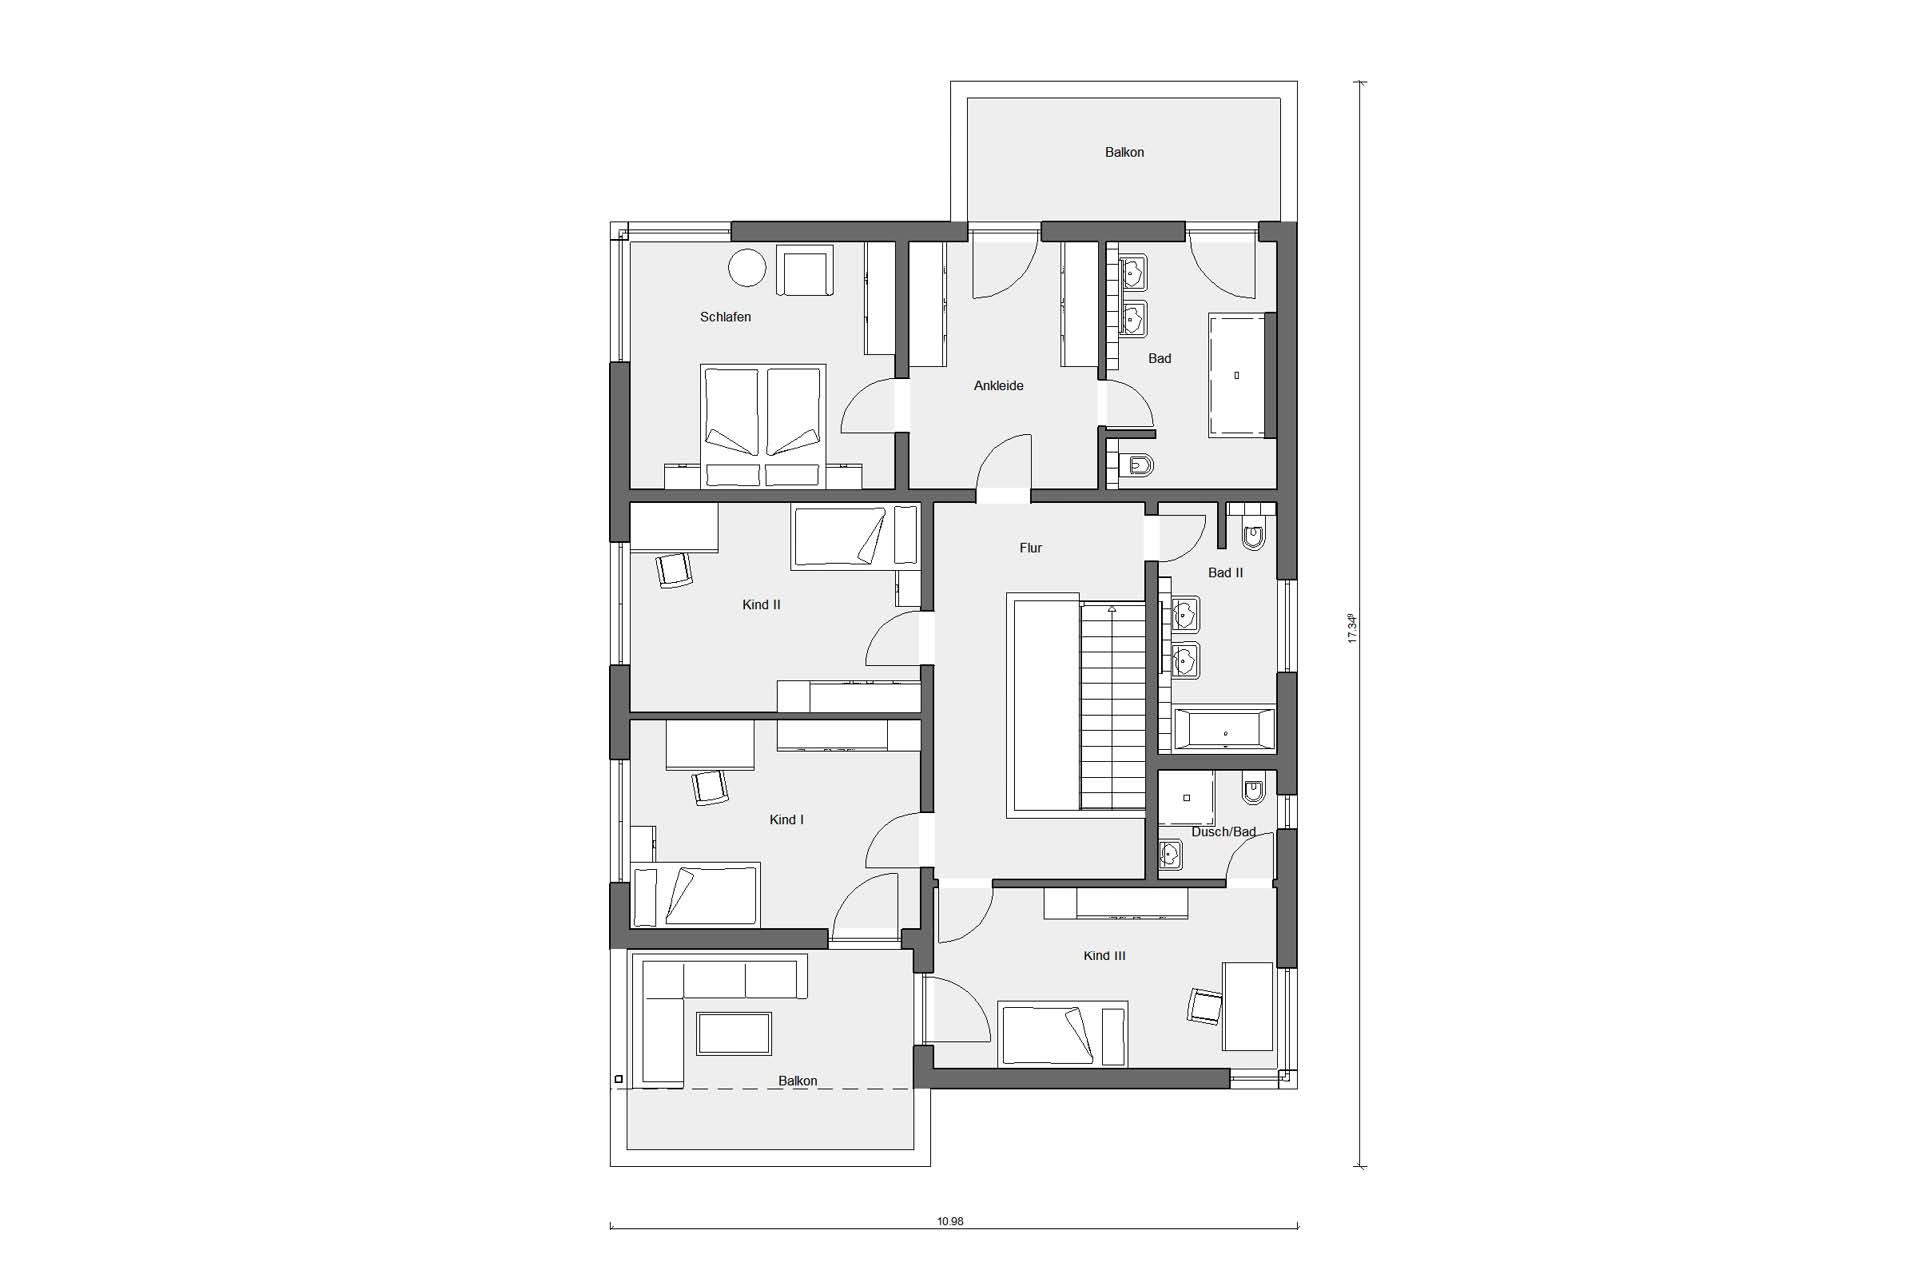 Pianta soffitta casa unifamiliare in stile Bauhaus con tetto piano E 20-207.1